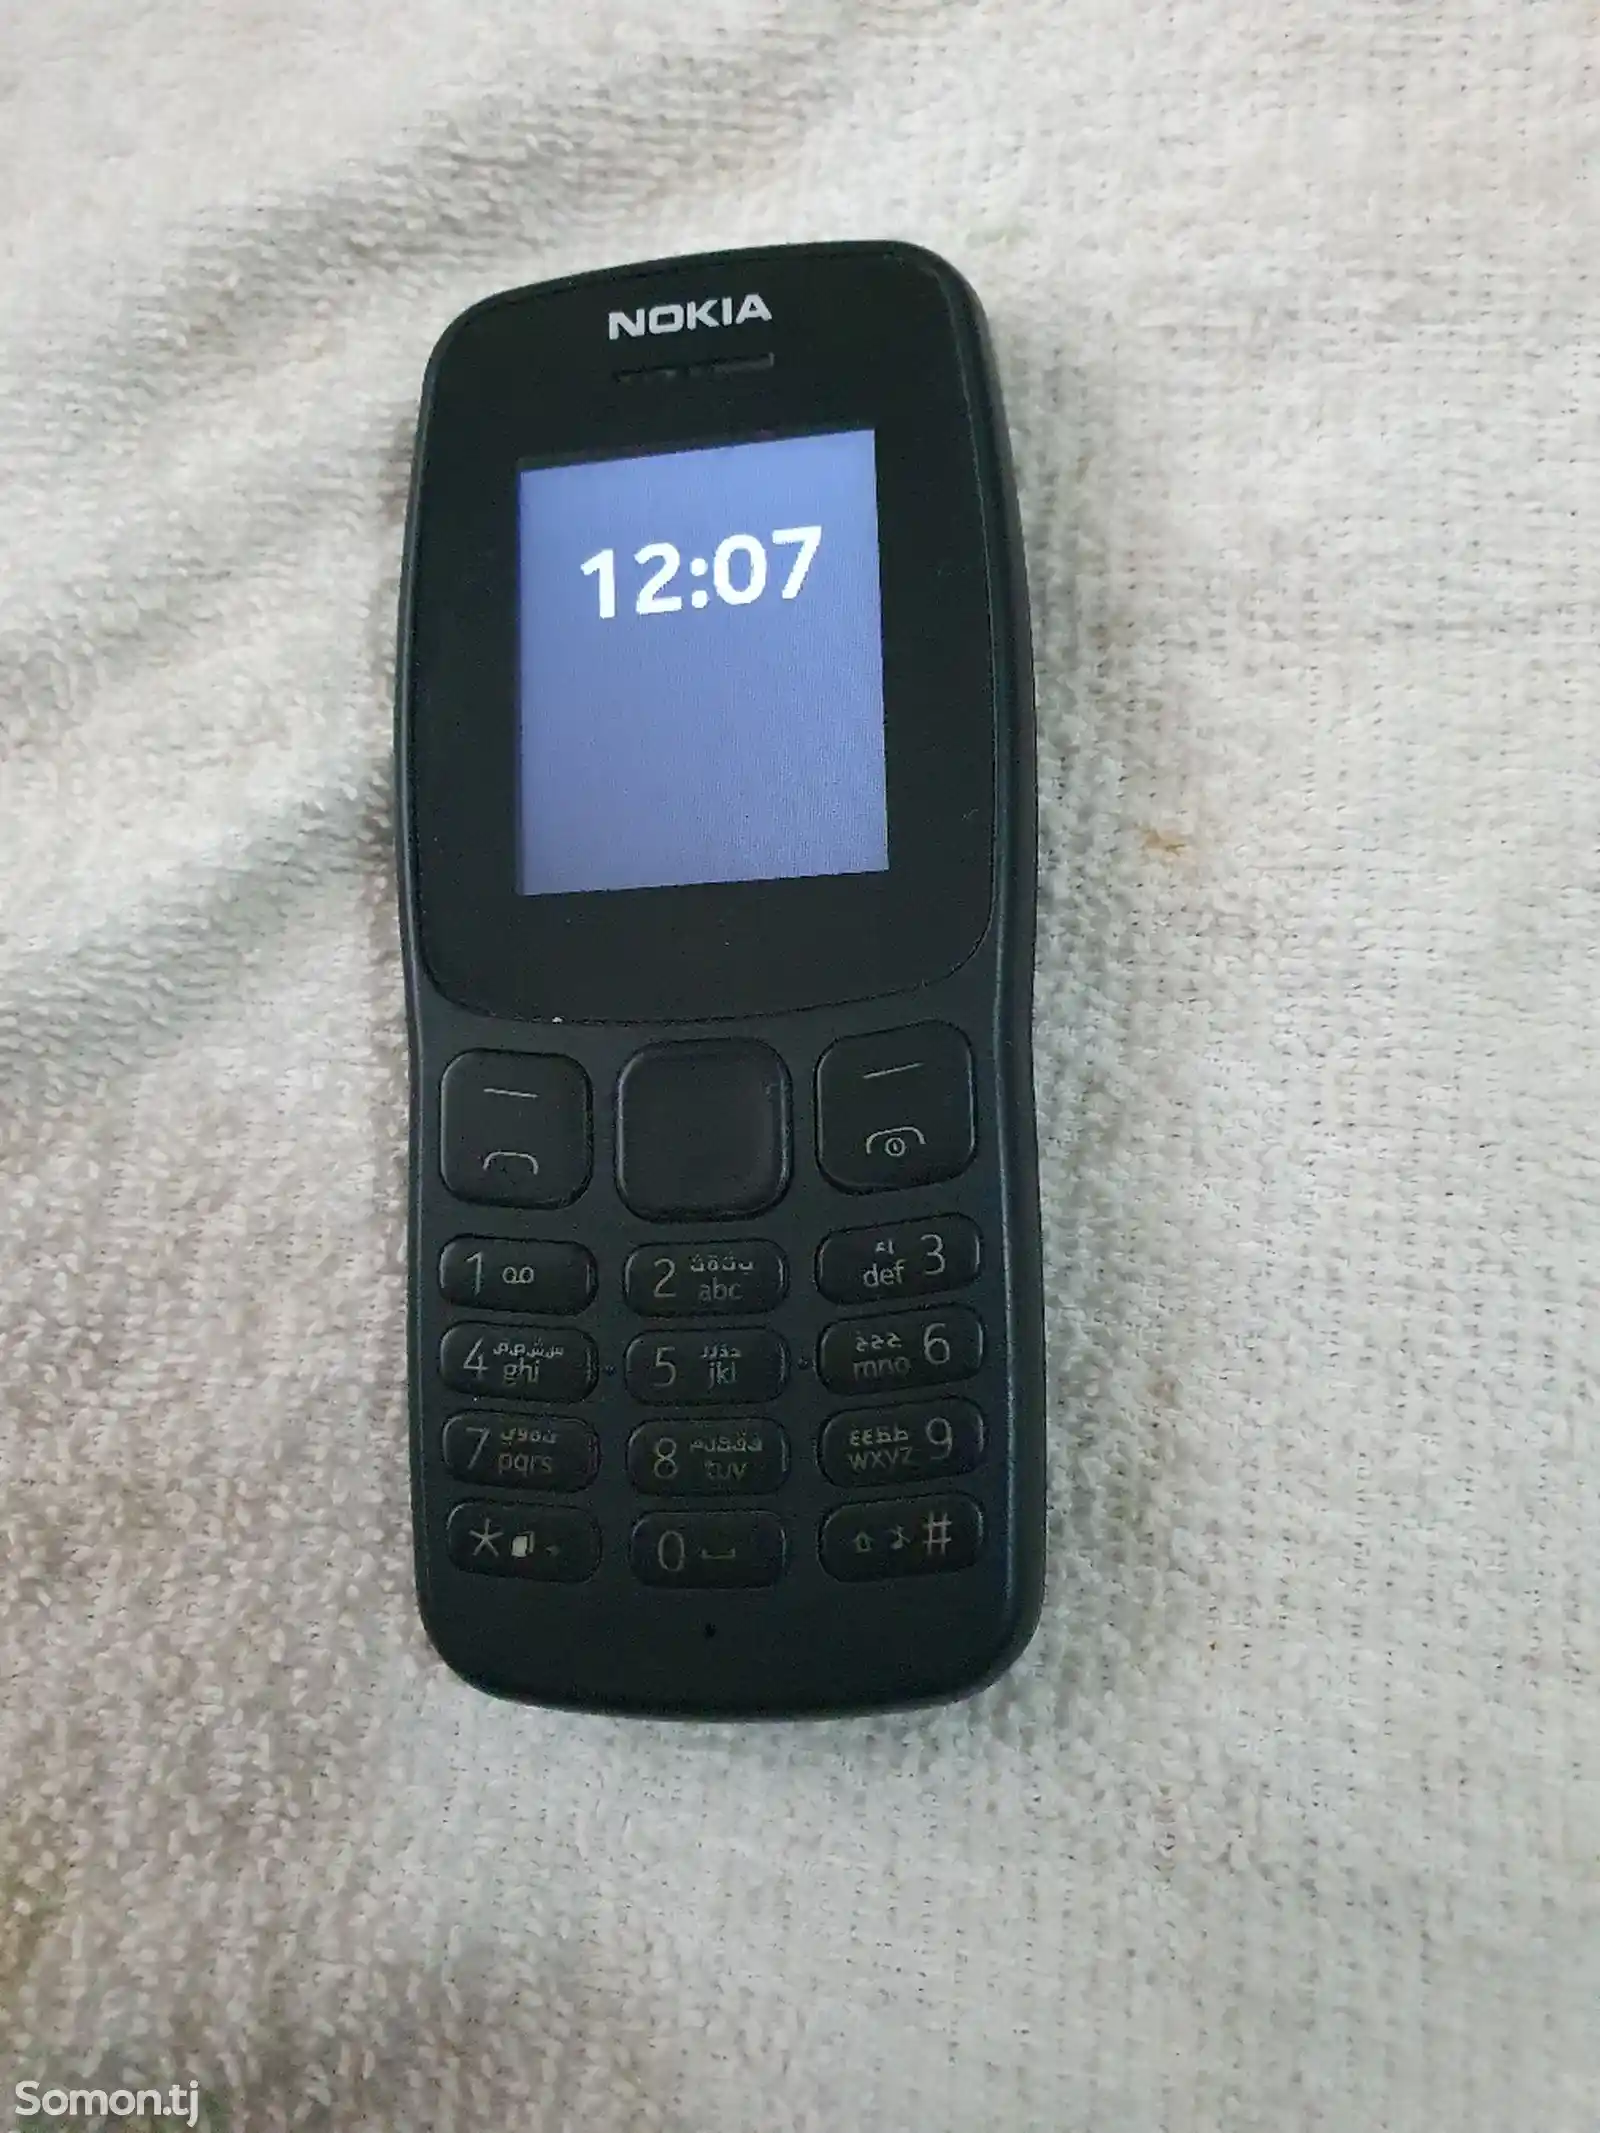 Nokia 106-2